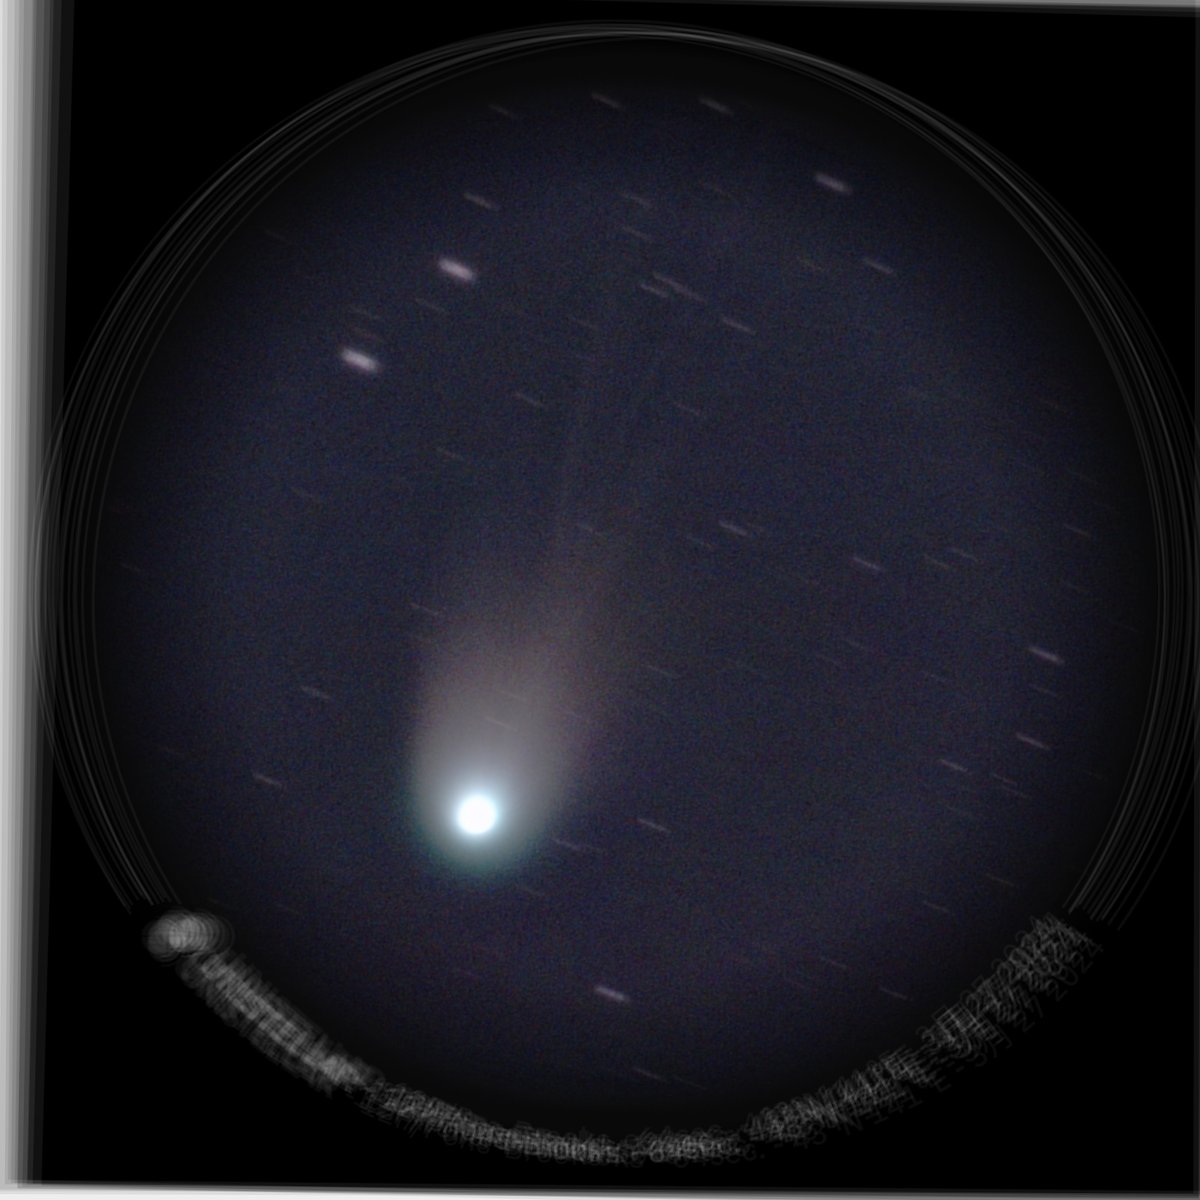 3月27日の夕方に観測した 12P/Pons-Brooks 彗星、1分エンハンス15枚を imagej で平均とった。細い線状の尾が写っているようだ。
#eVscope